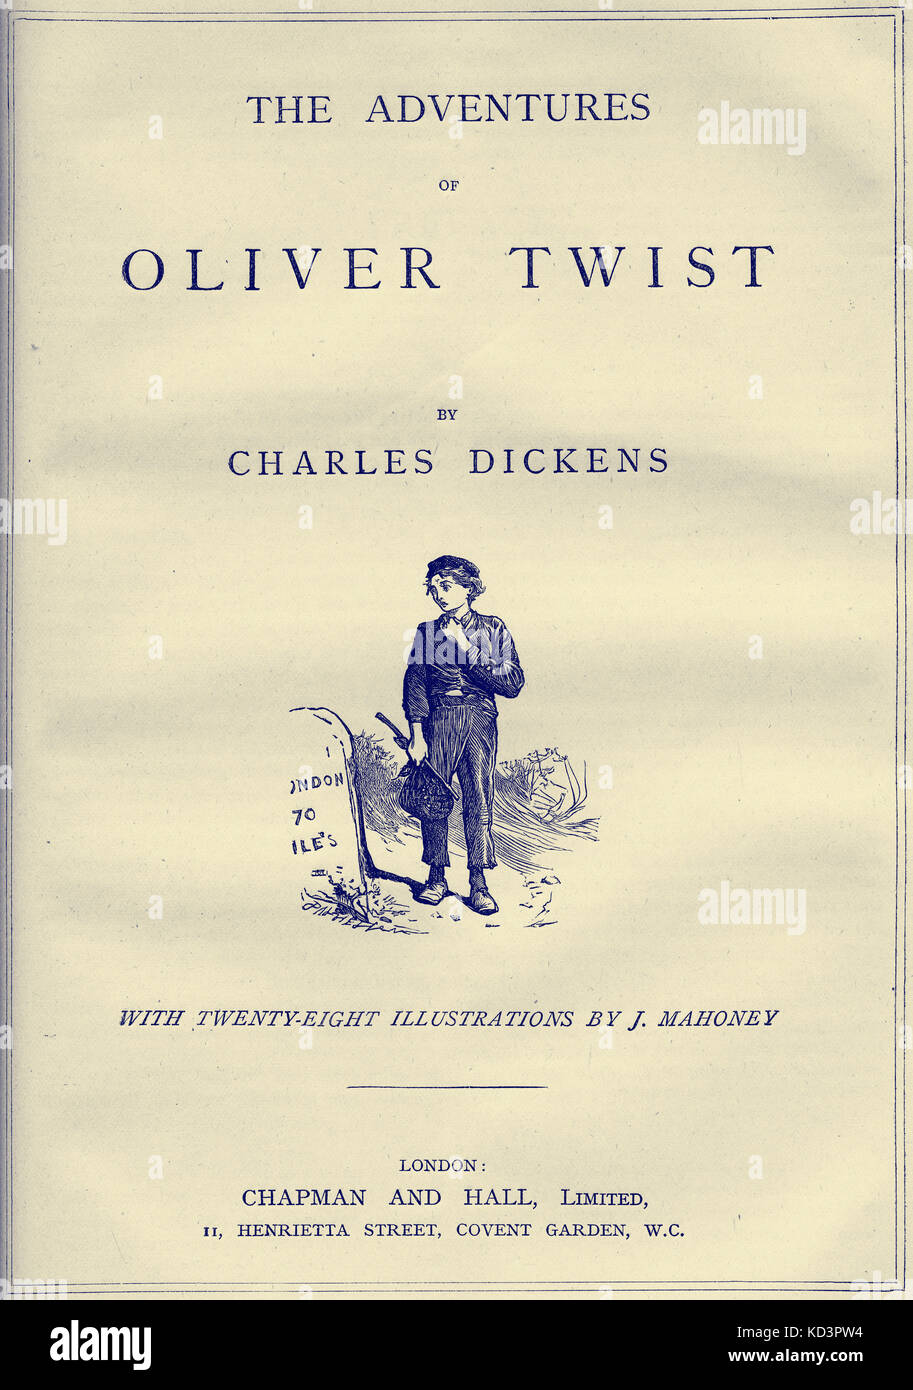 Oliver Twist di Charles Dickens pagina del titolo - romanziere inglese, 7 febbraio 1812 - 9 giugno 1870. Illustrazione di James Mahoney 1810–1879 : Foto Stock